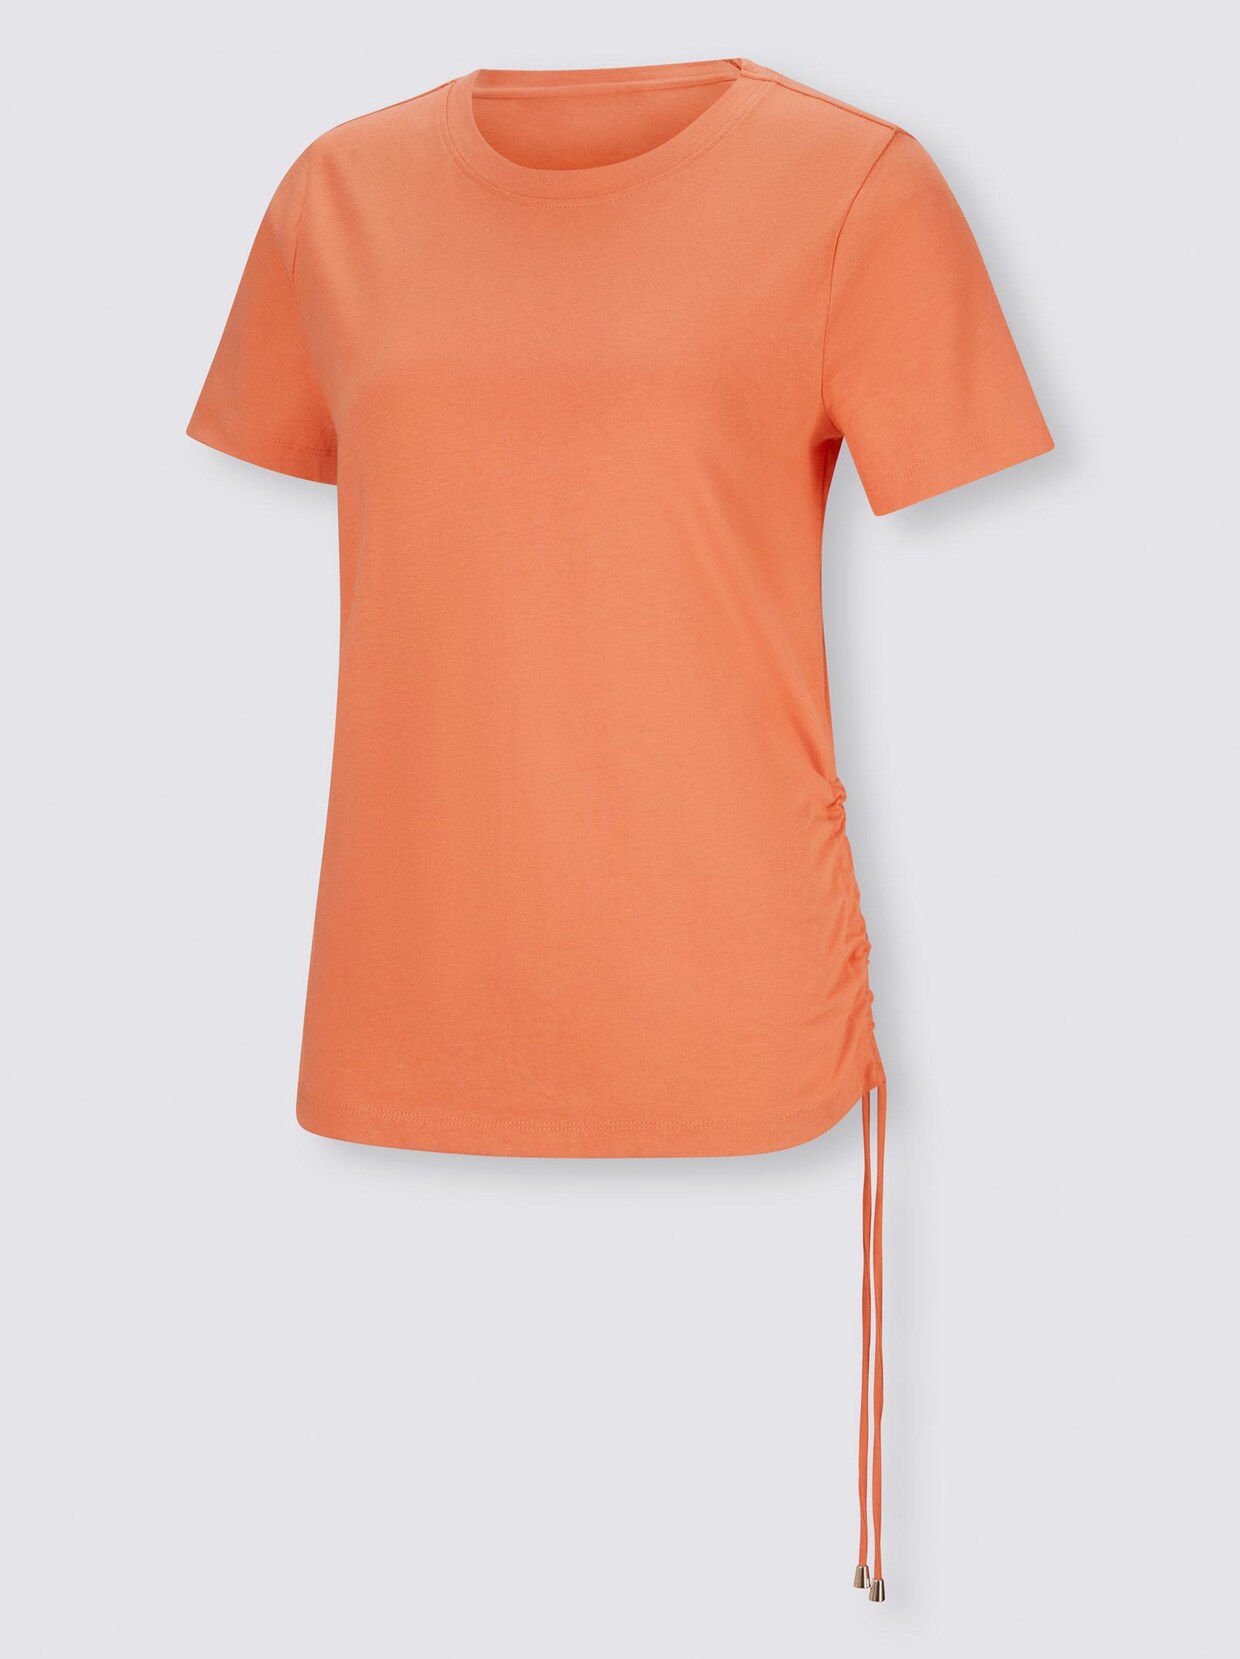 Rick Cardona Shirt - mandarine